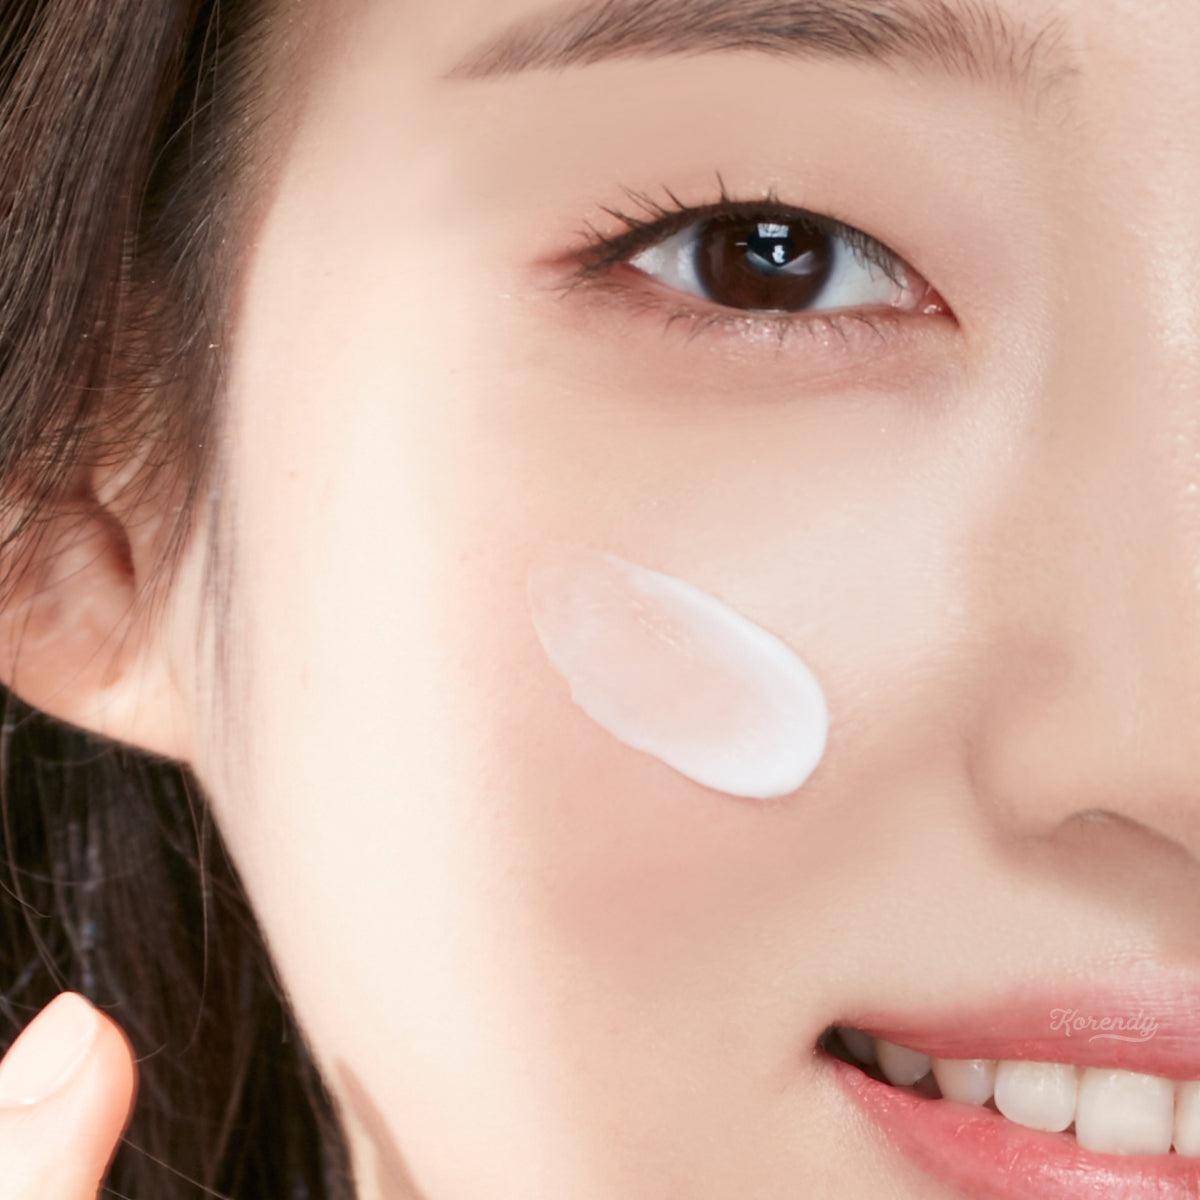 Pyunkang Yul - Moisture Cream 100ml Krem Korendy Türkiye Turkey Kore Kozmetik Kbeauty Cilt Bakım 